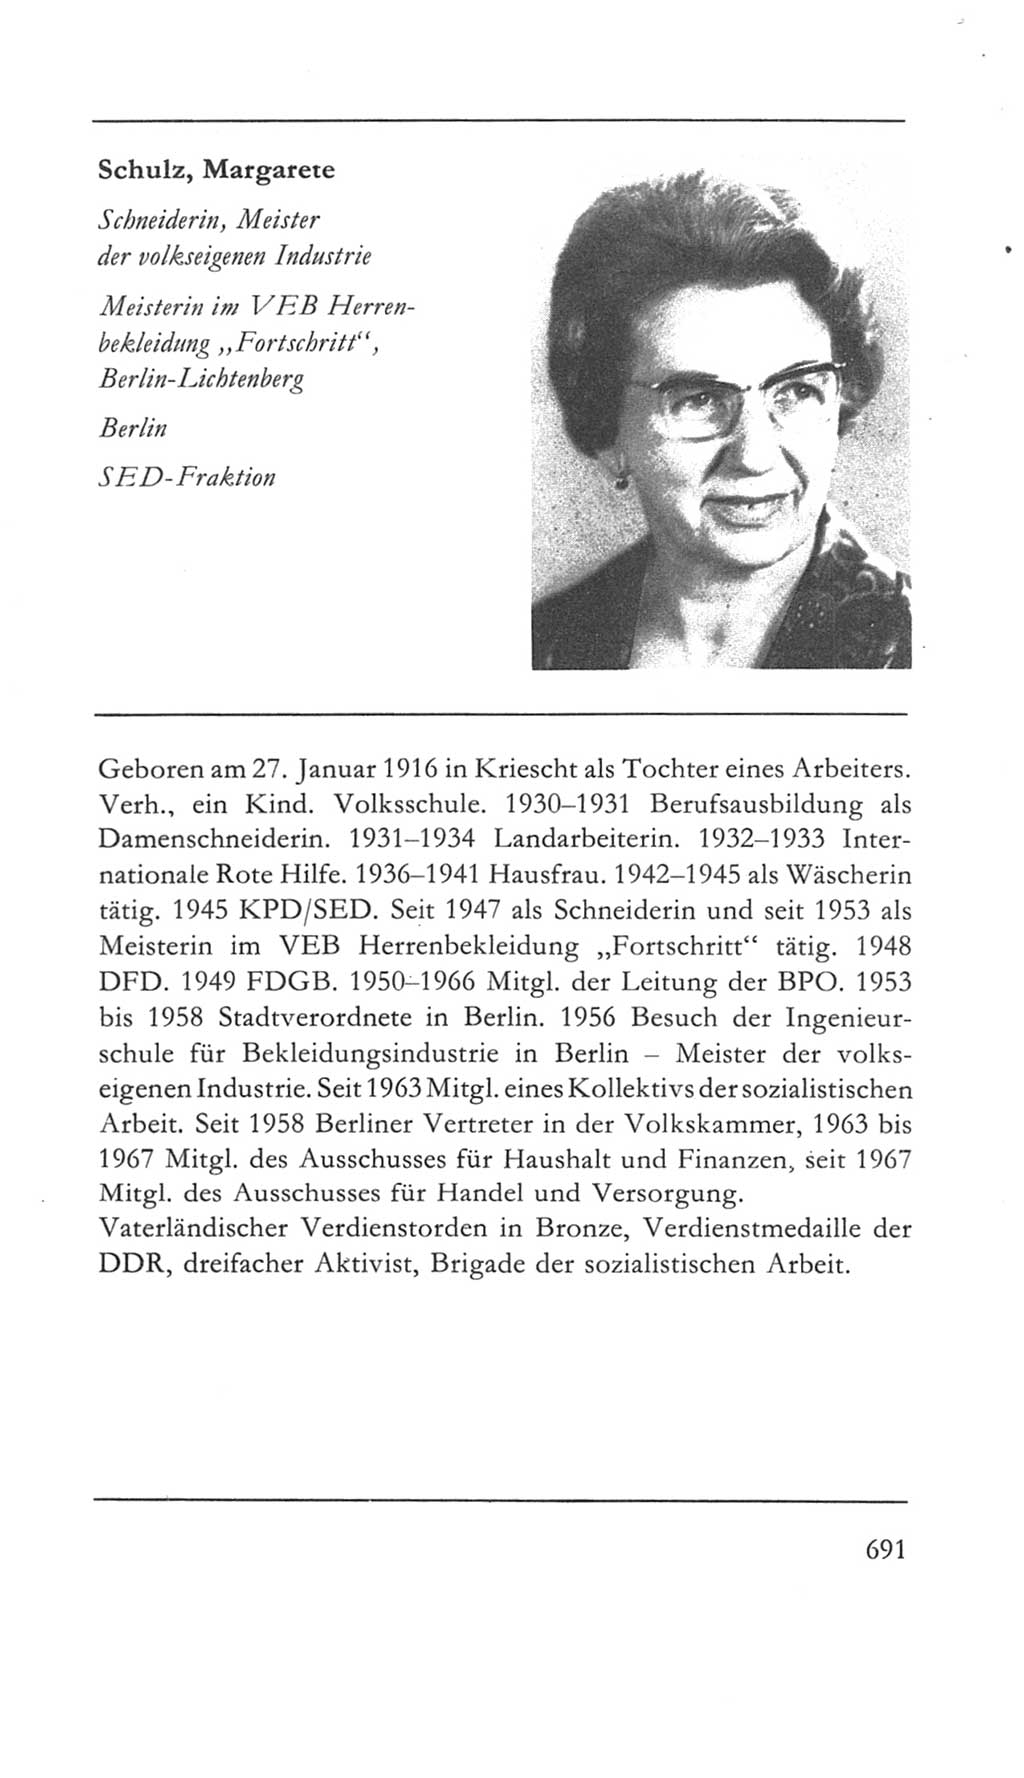 Volkskammer (VK) der Deutschen Demokratischen Republik (DDR) 5. Wahlperiode 1967-1971, Seite 691 (VK. DDR 5. WP. 1967-1971, S. 691)